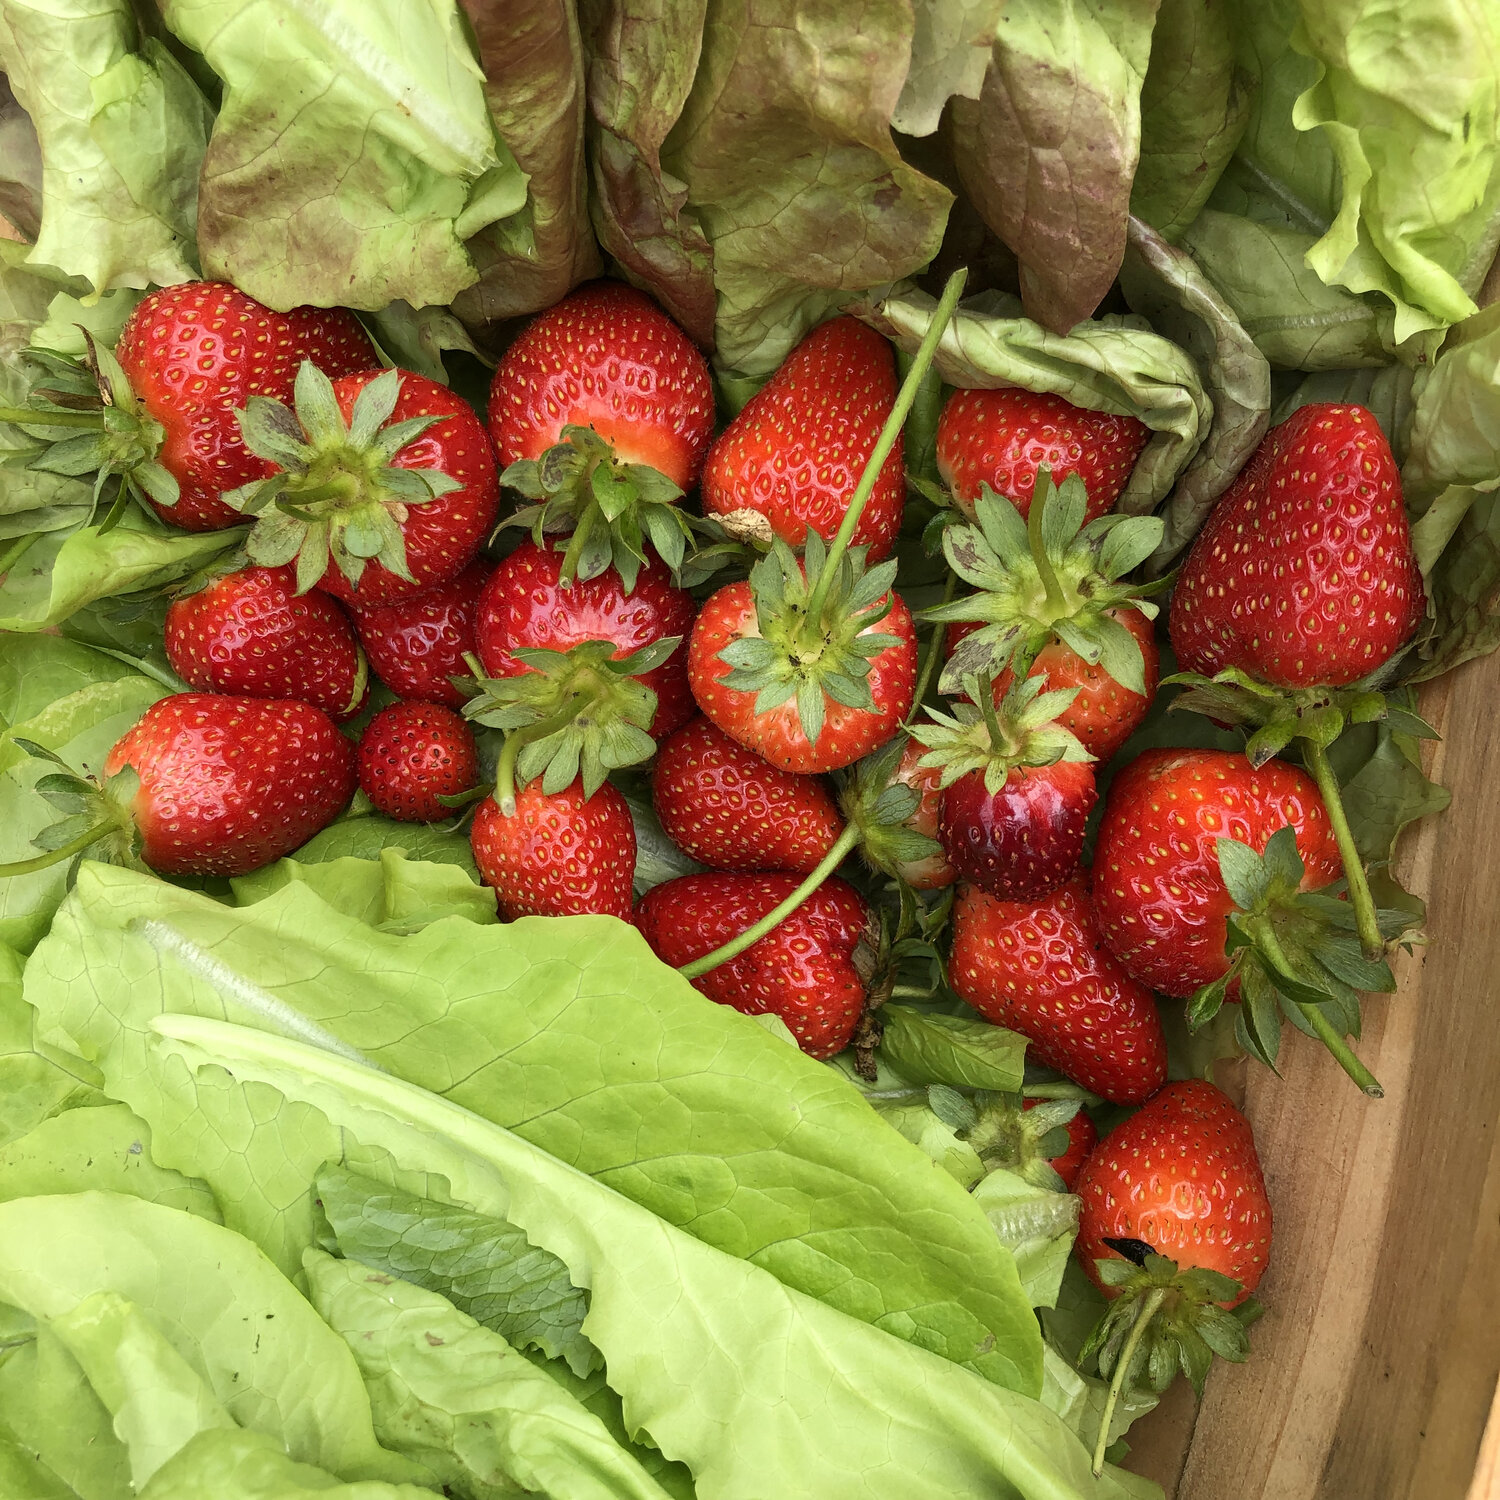 strawberries in lettuce